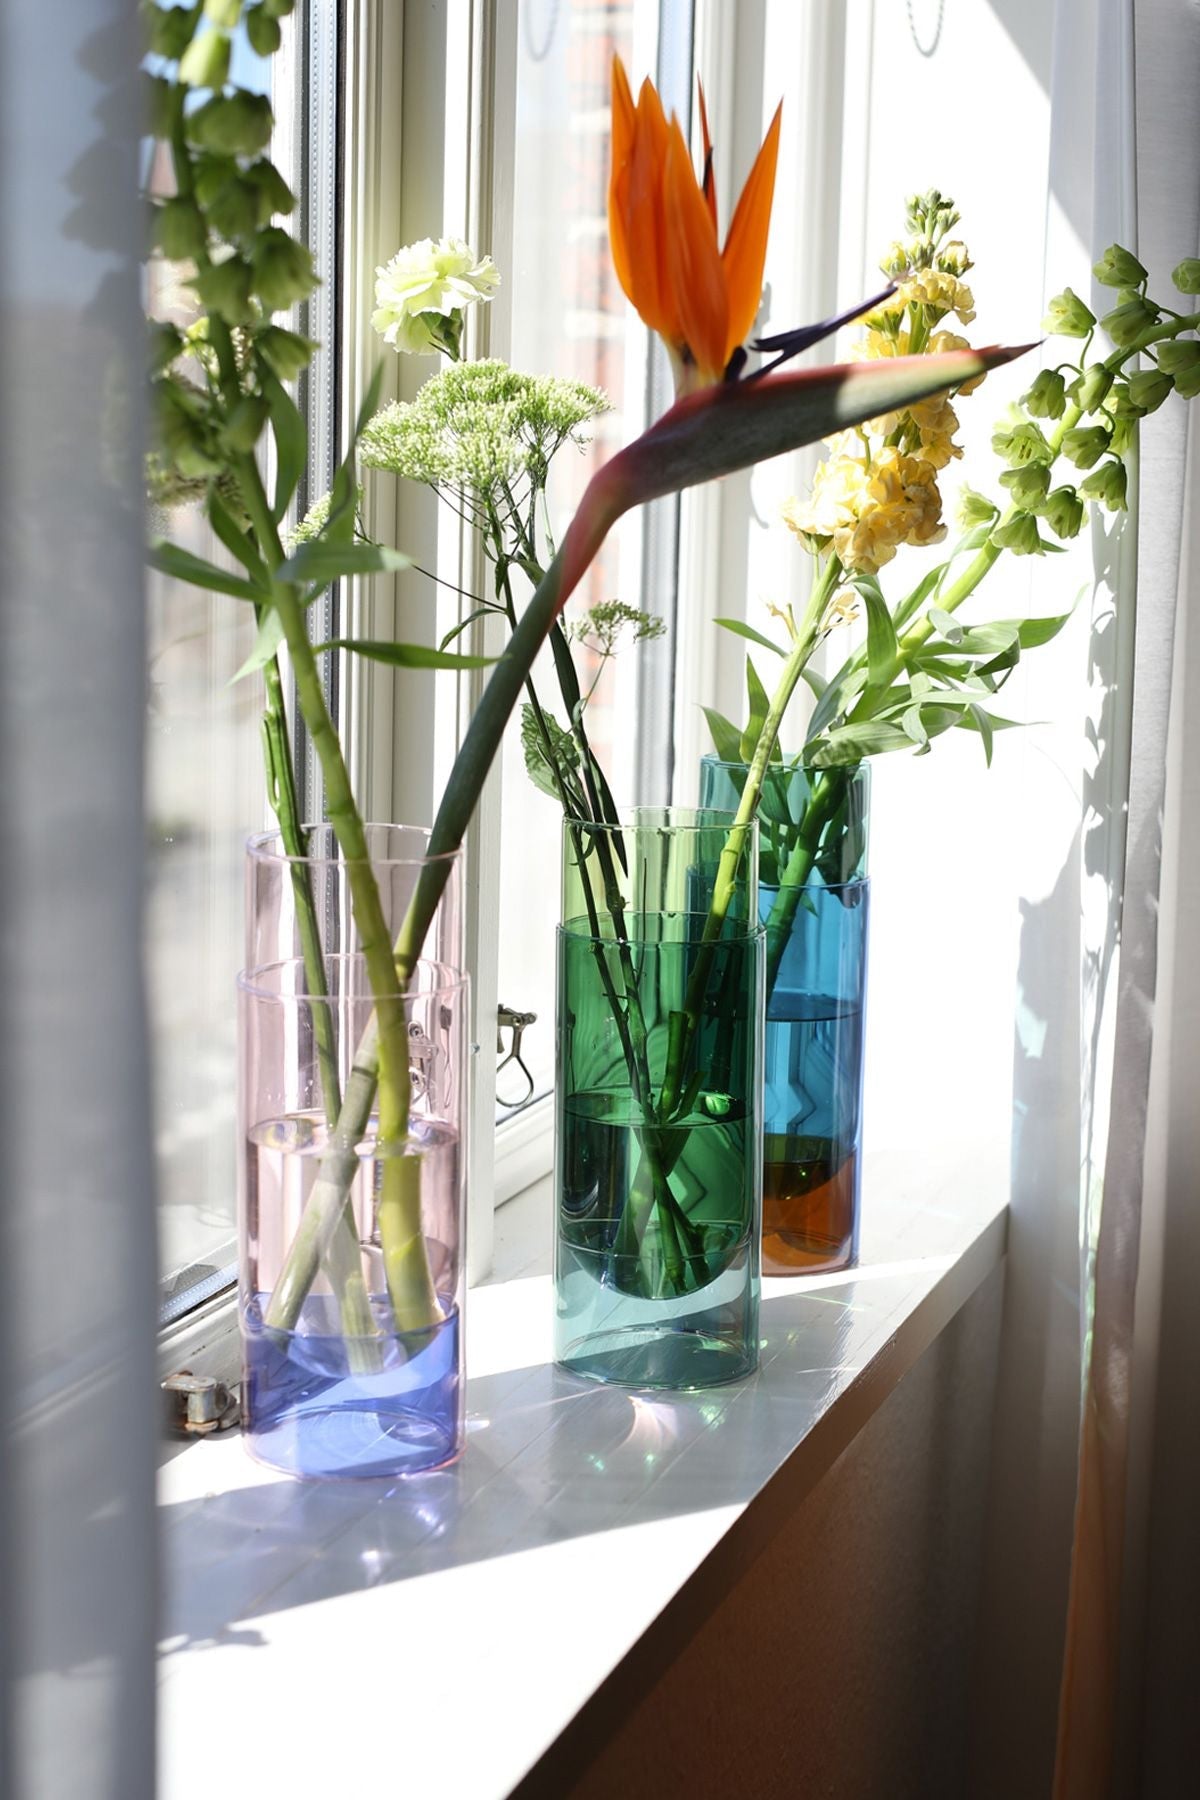 Studio sur le vase à tube de bouquet, vert